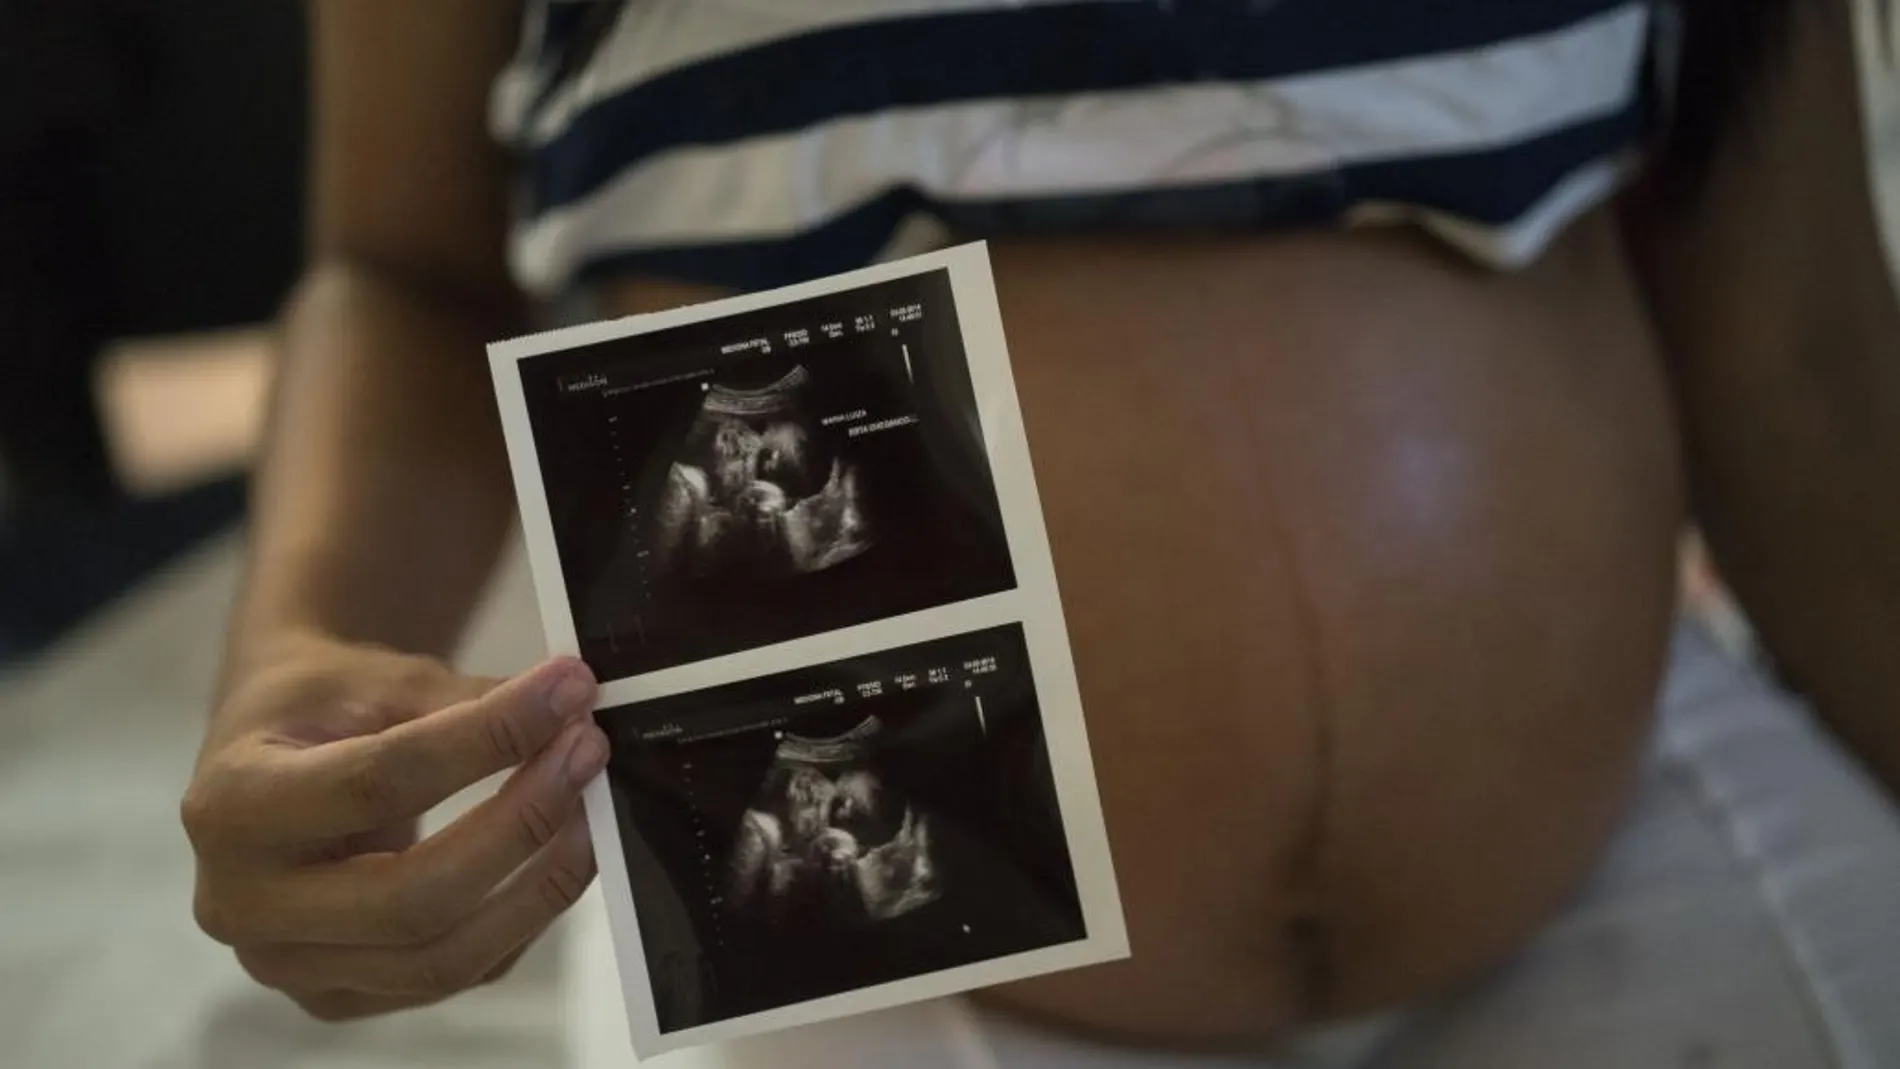 38 de los casos se han diagnosticado en embarazadas.